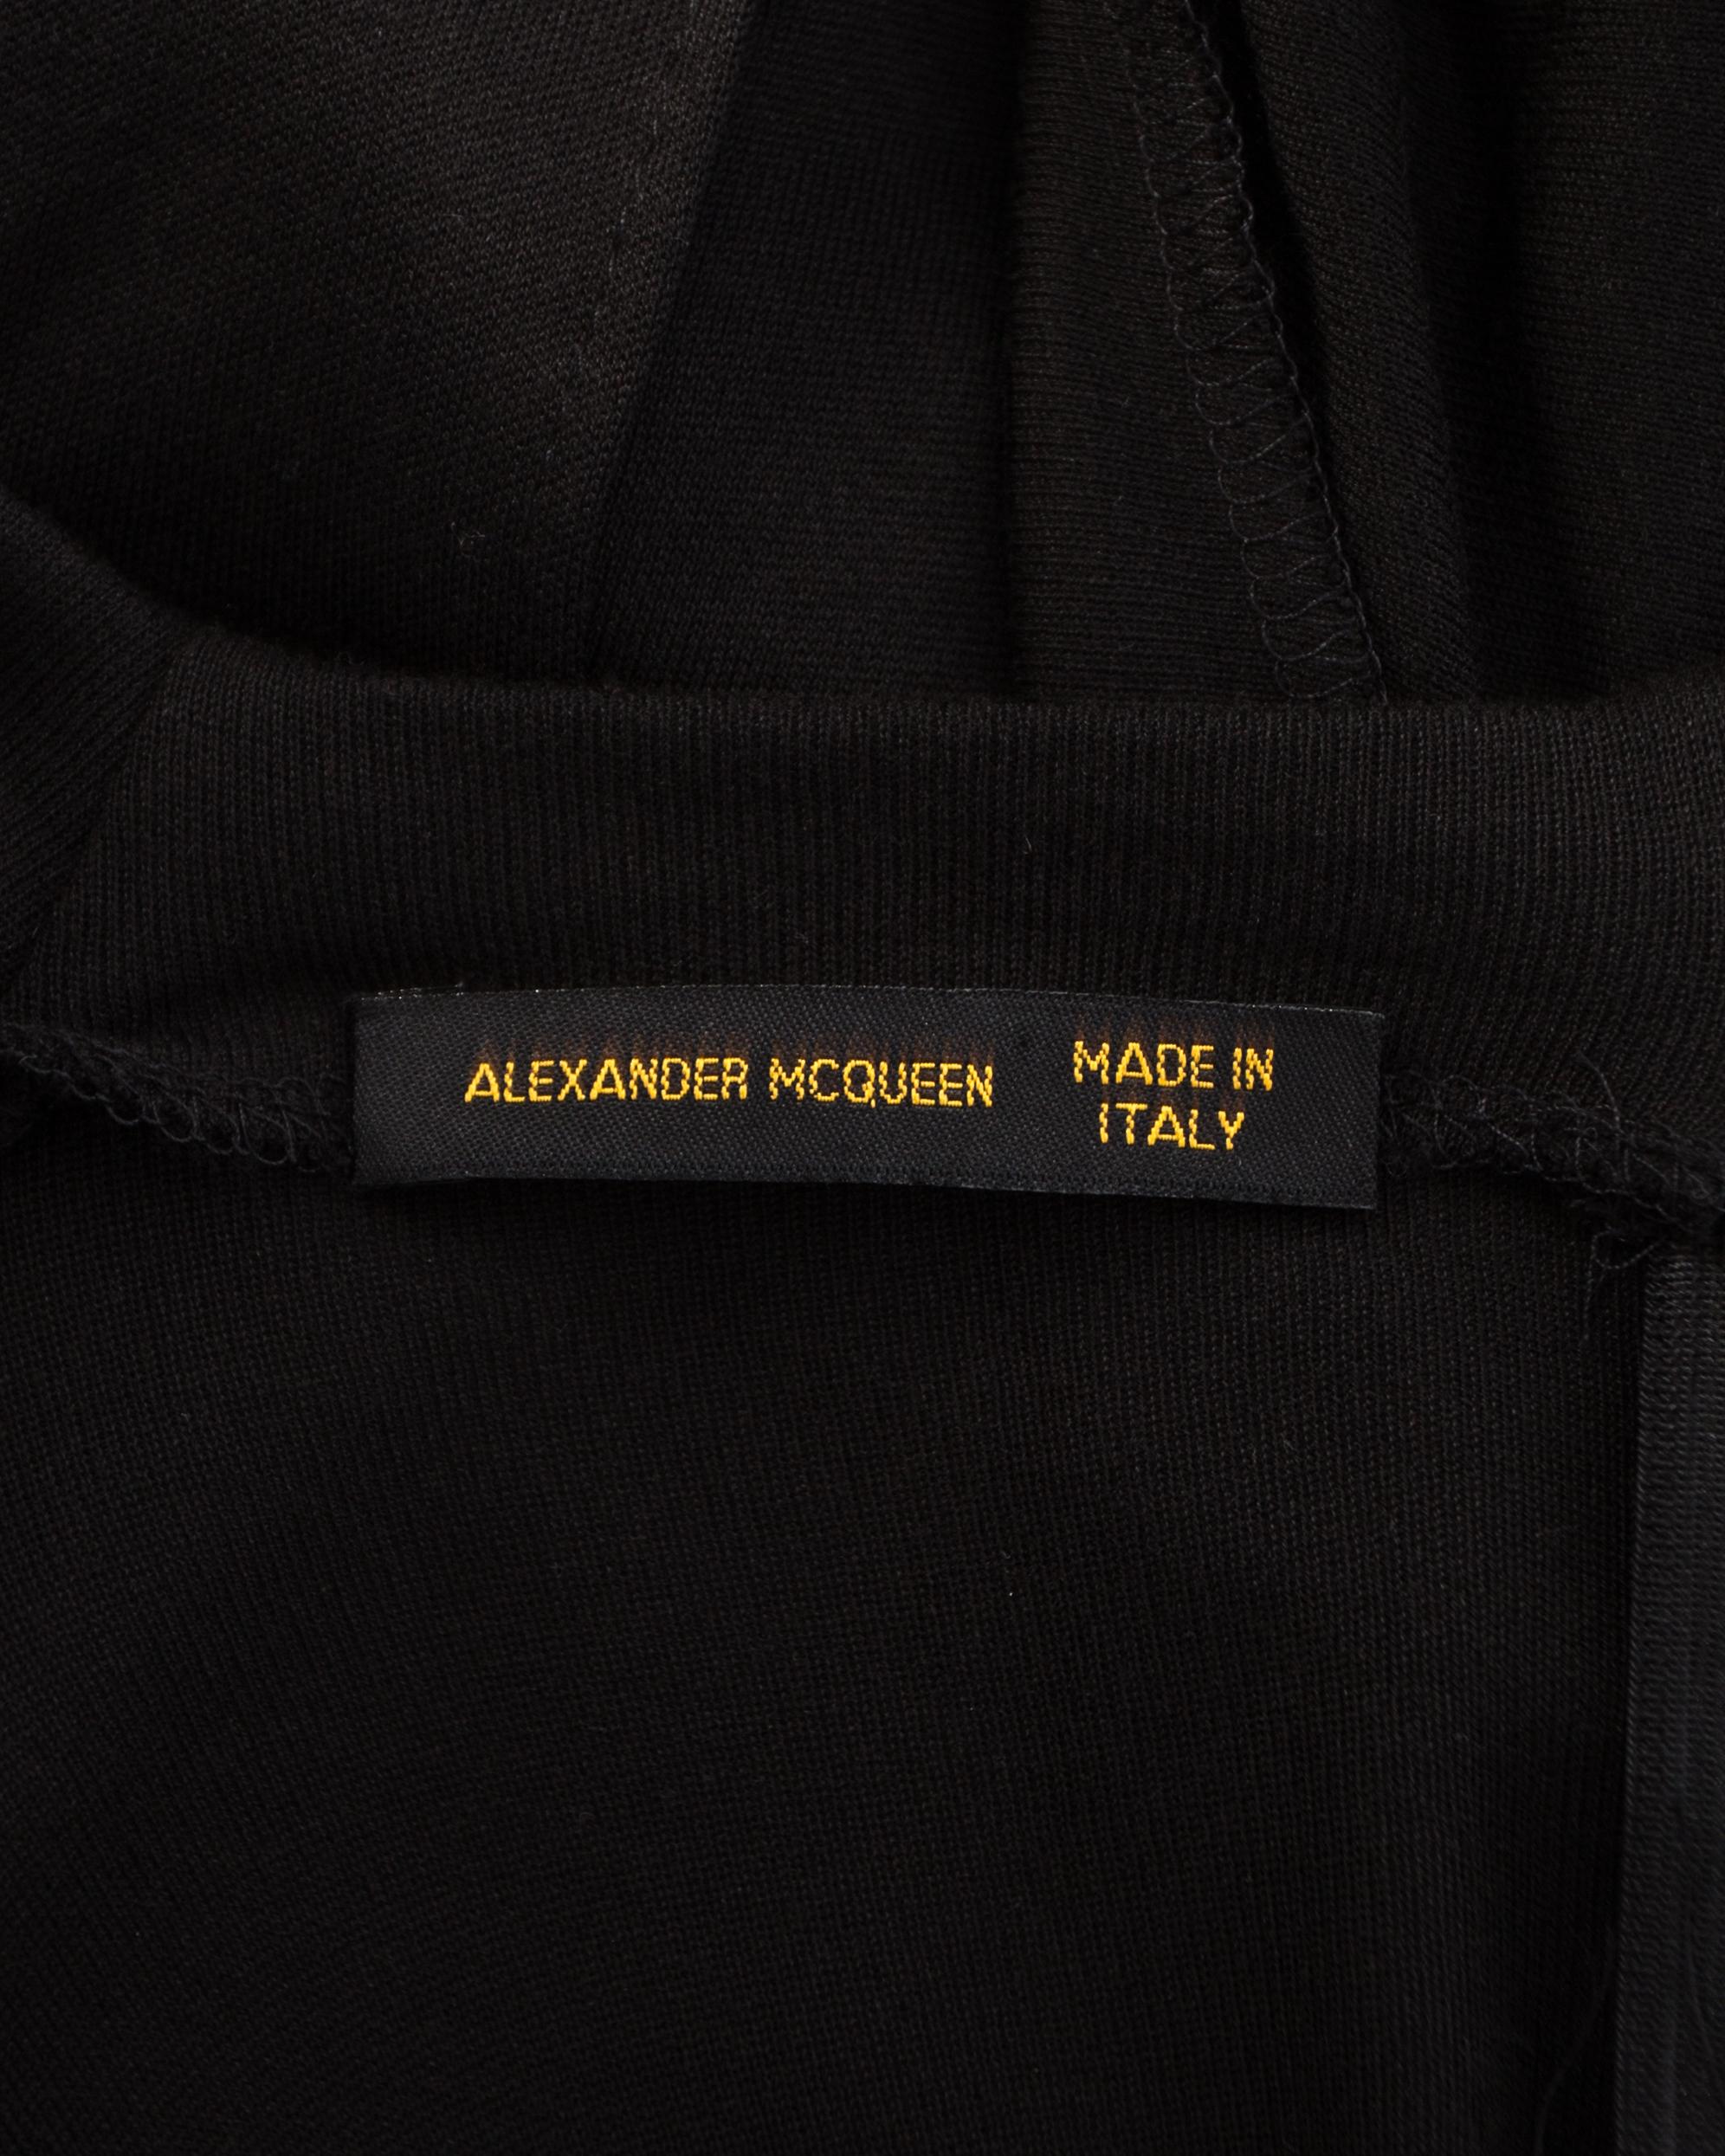 Alexander McQueen black silk and rayon jersey evening dress, A/W 2001 ...